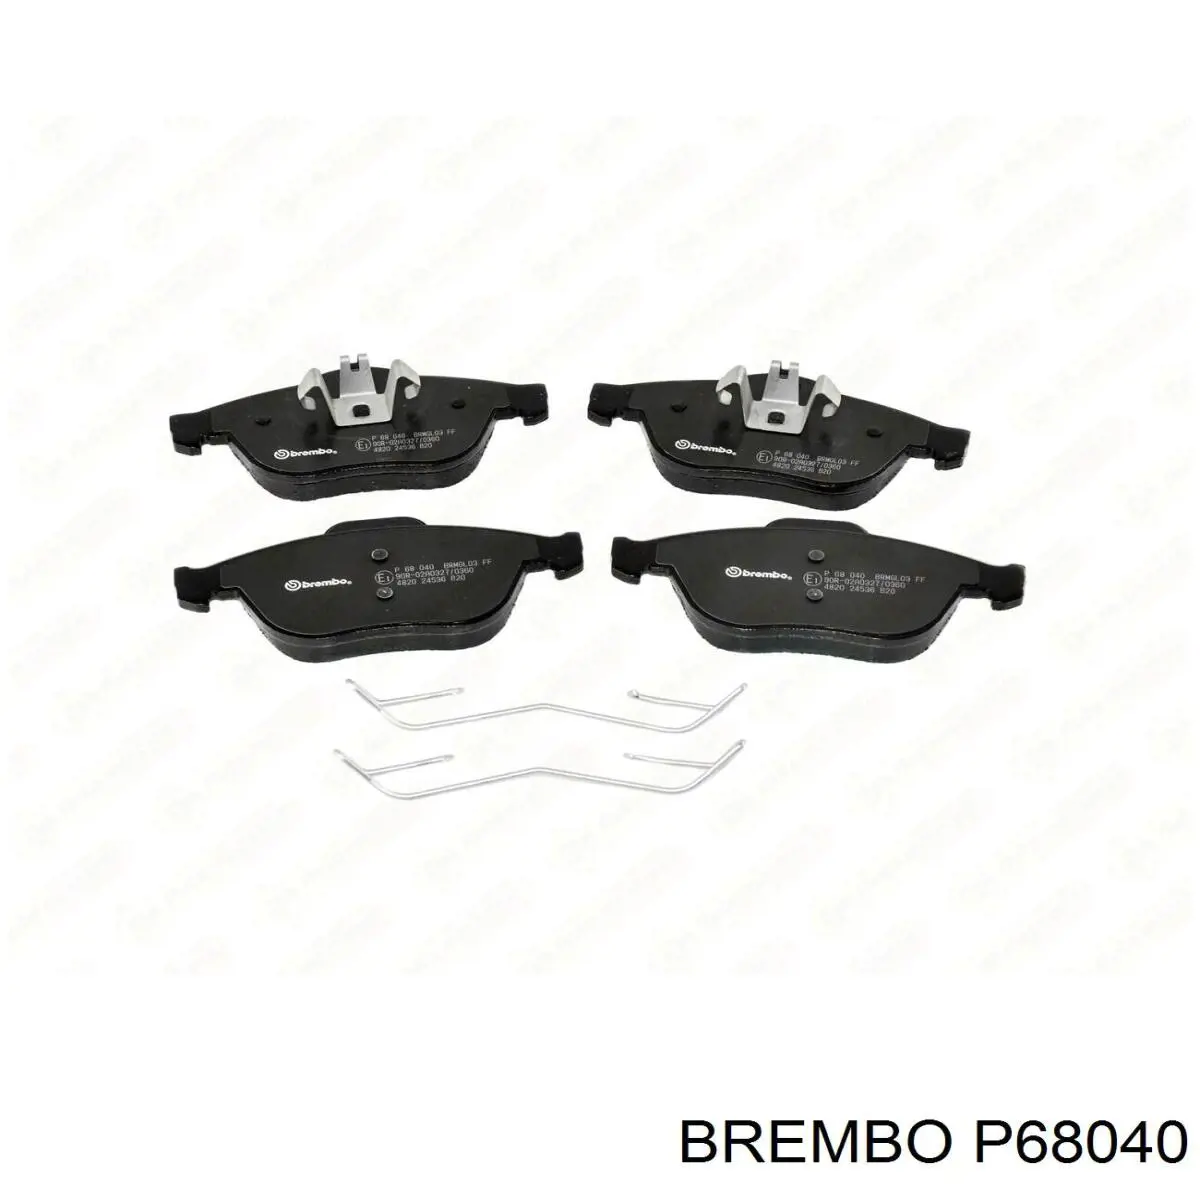 P68040 Brembo колодки тормозные передние дисковые